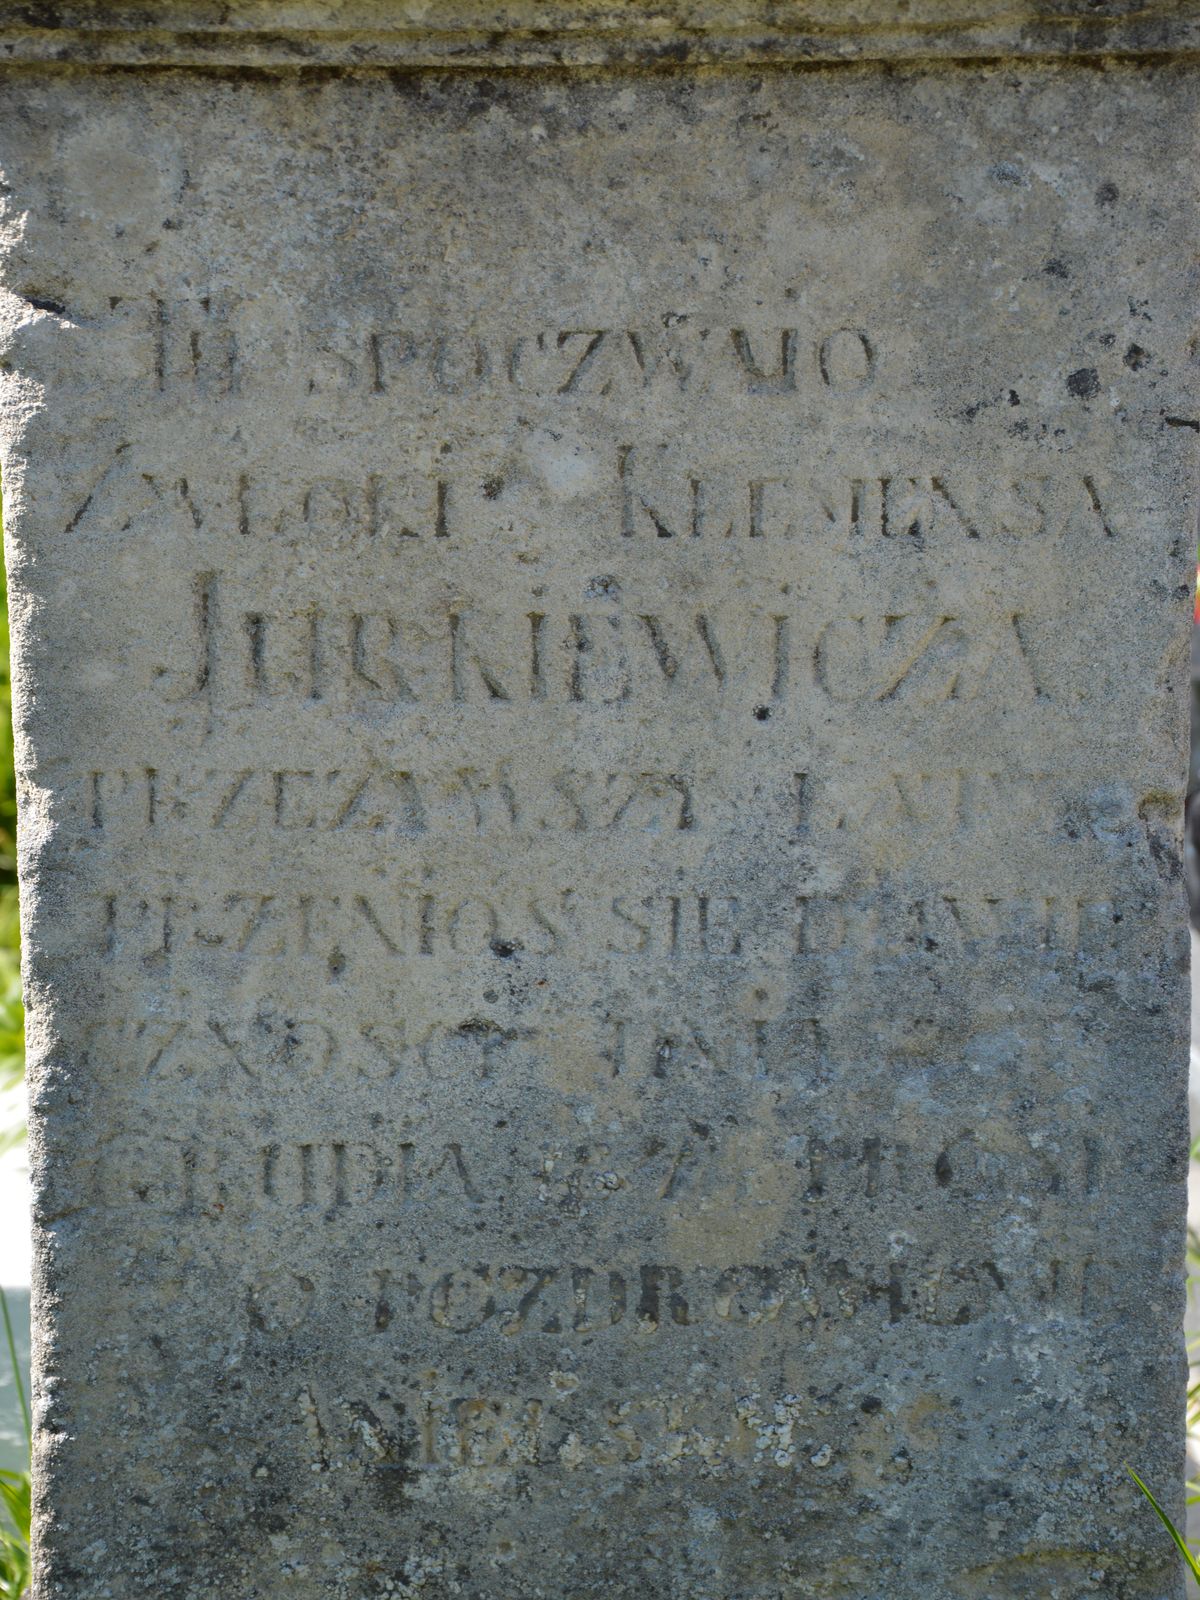 Inscription from the gravestone of Klemens Jurkiewicz, cemetery in Ihrowica